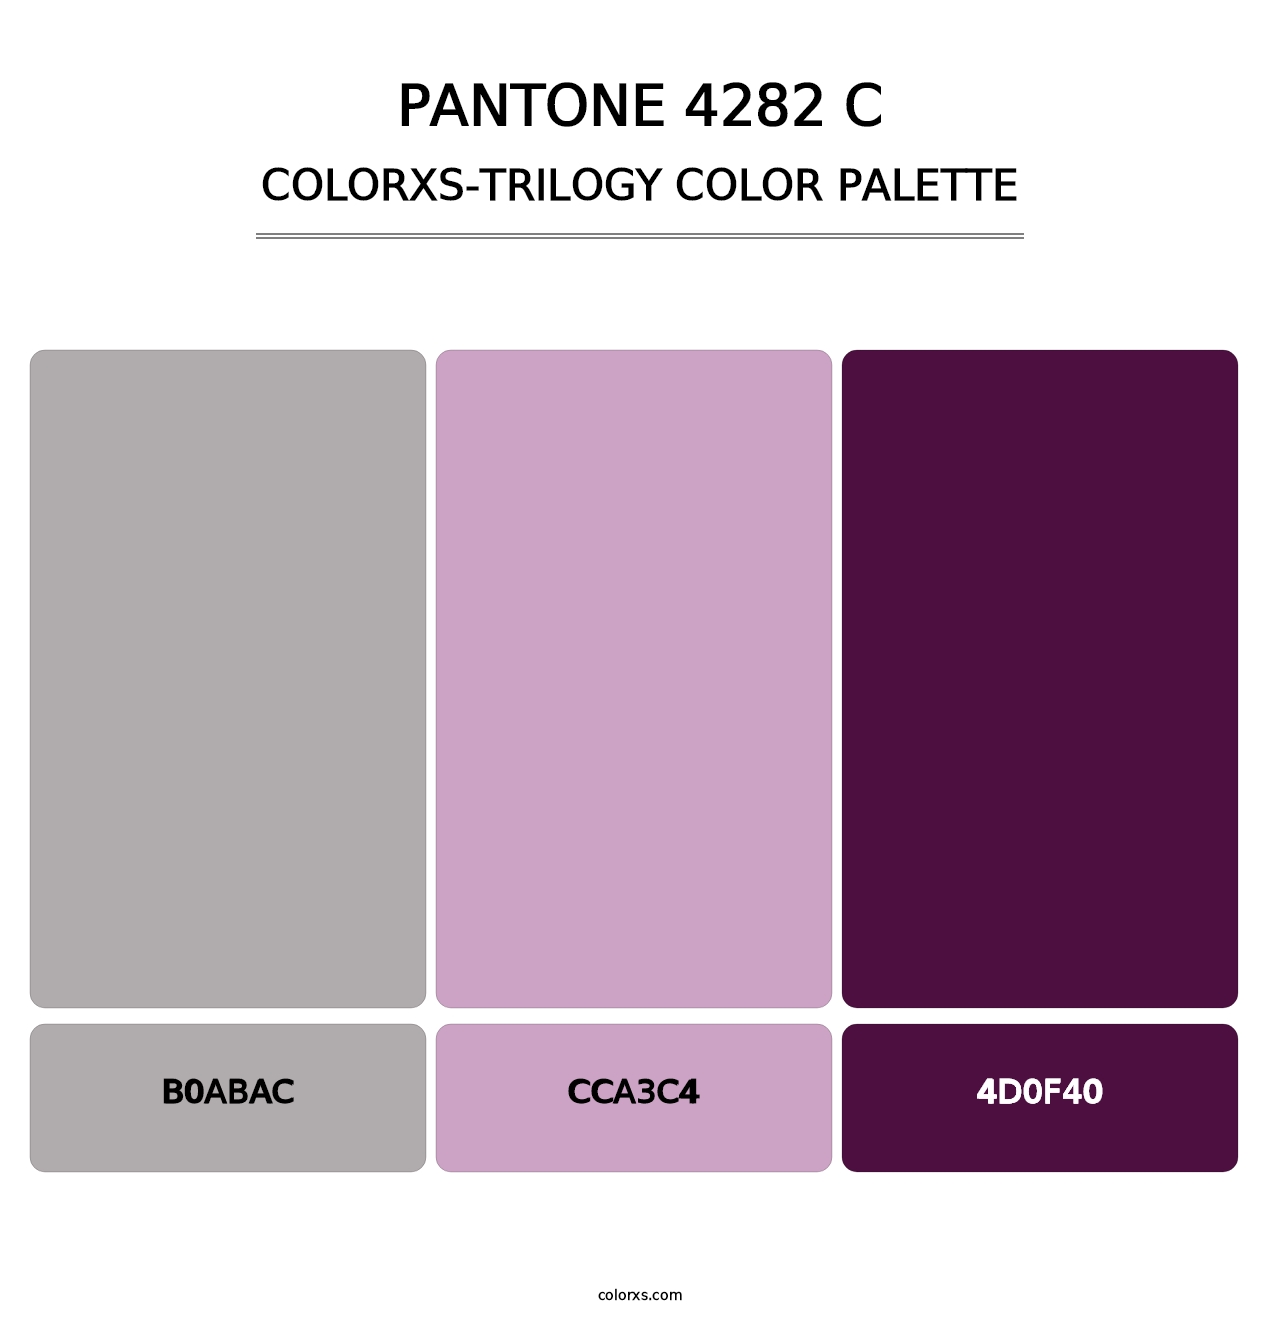 PANTONE 4282 C - Colorxs Trilogy Palette